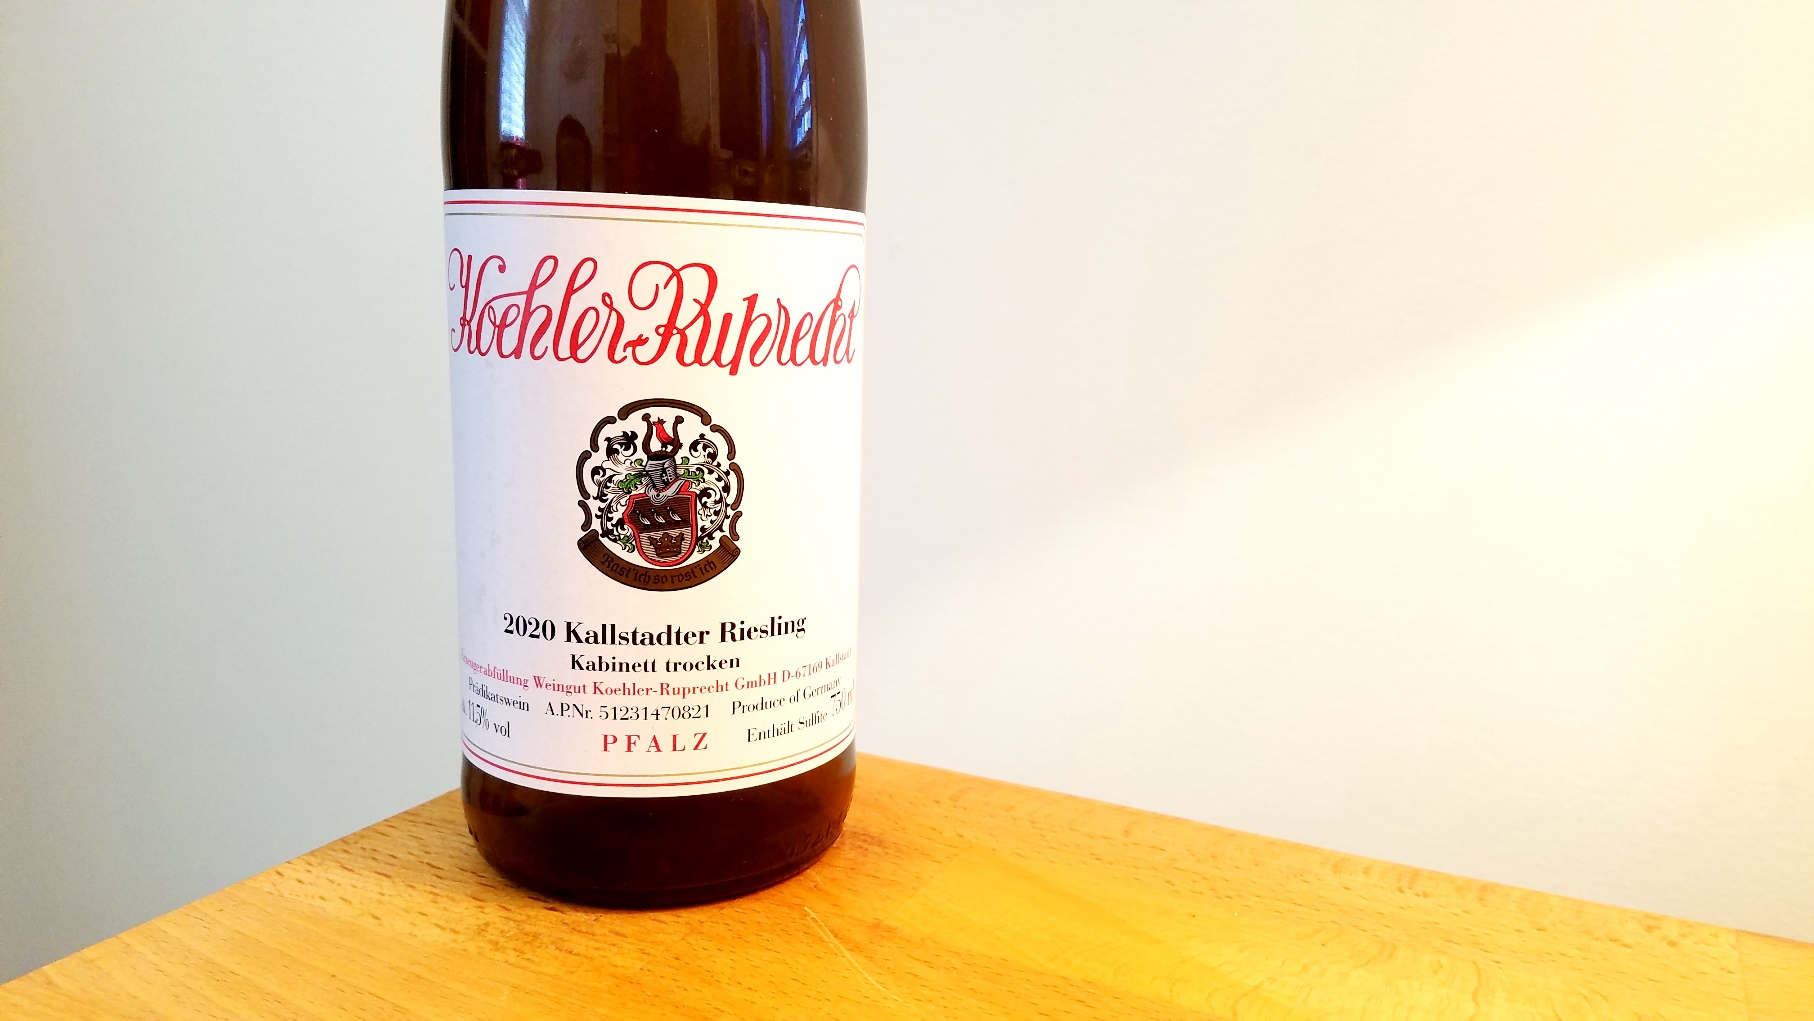 Koehler-Ruprecht, Kabinett Trocken Kallstadter Riesling 2020, Pfalz, Germany, Wine Casual